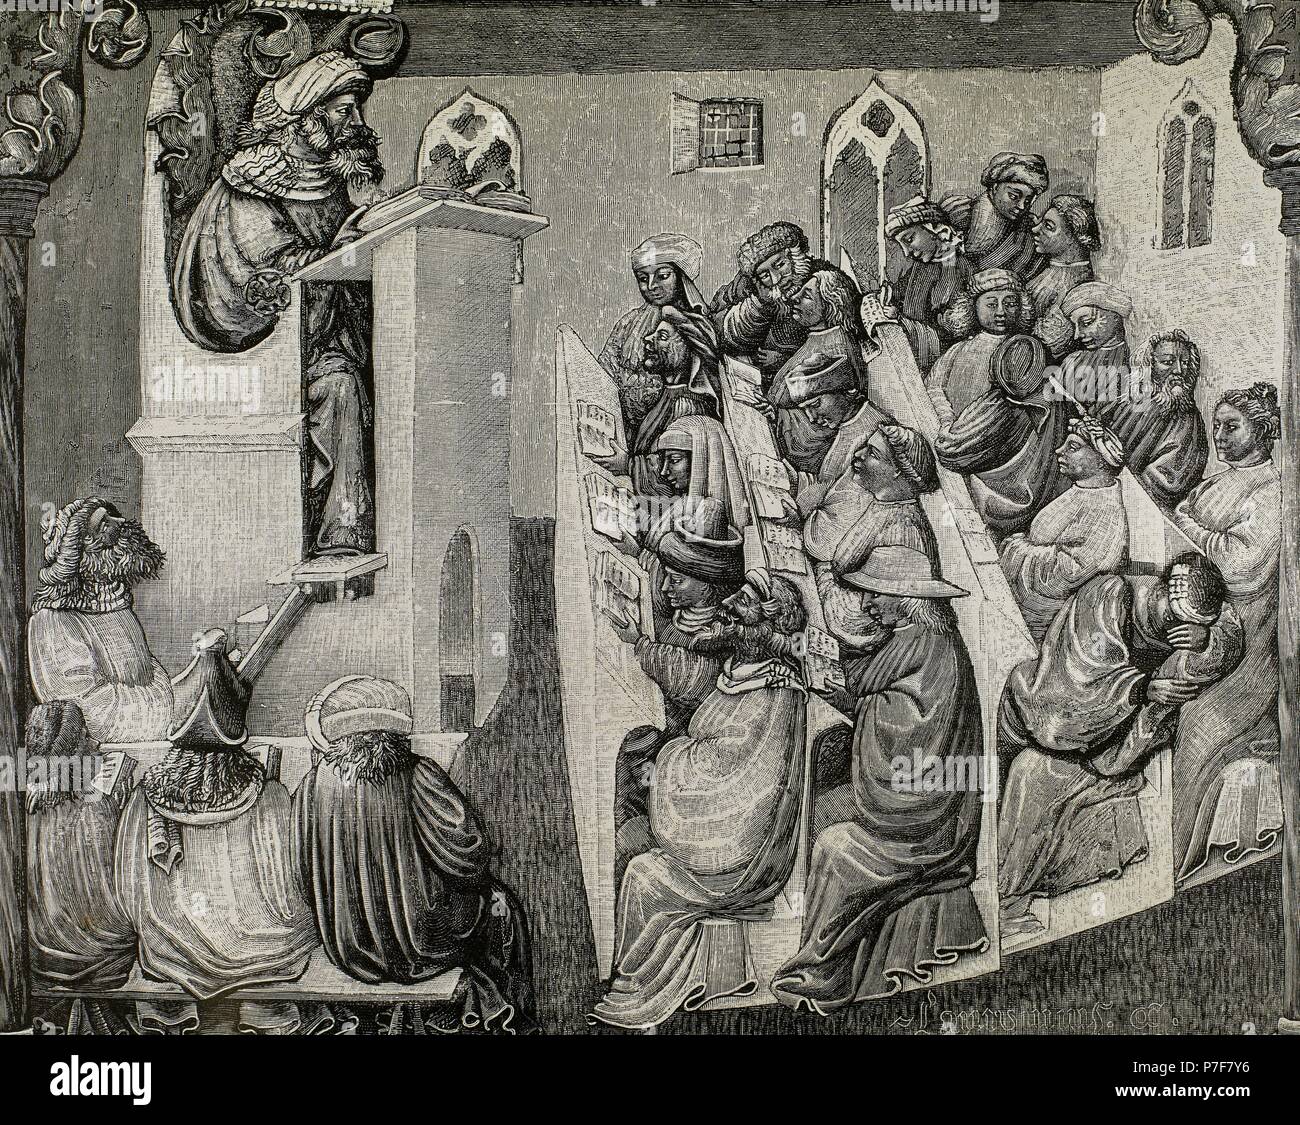 Baja Edad Media.14to siglo. Henry de Alemania una charla para estudiantes  en la Universidad de Bolonia, ca. 1360-1390. Estudiantes en la fila de  atrás hablan entre sí y uno de los está